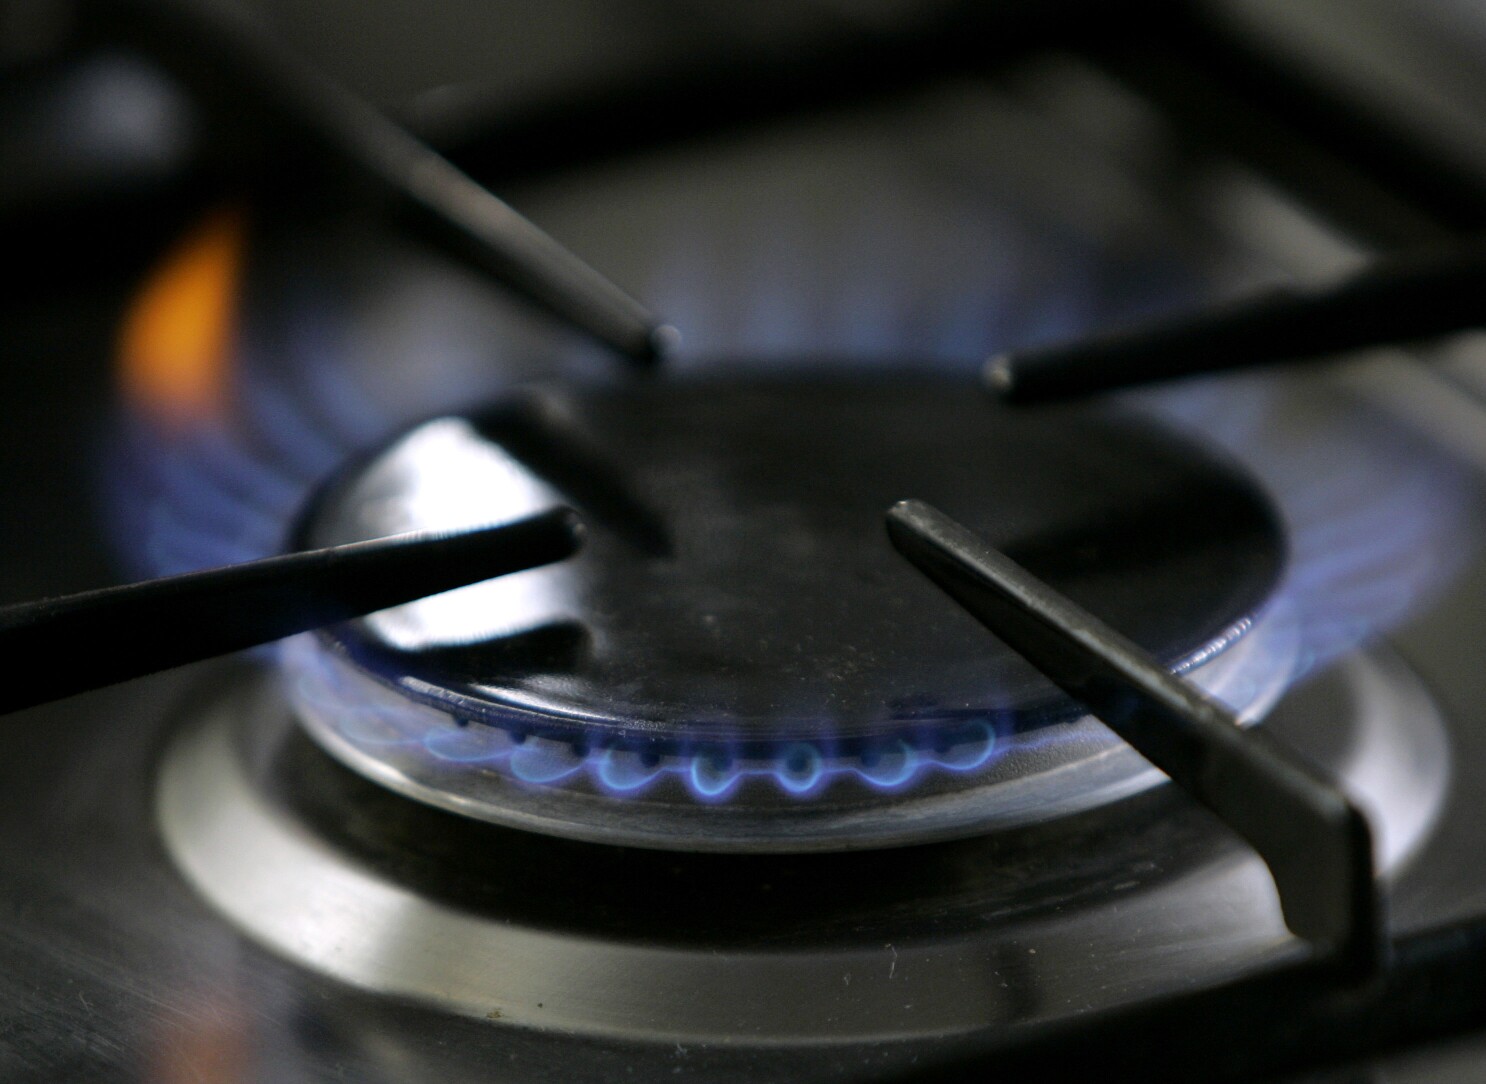 Una imagen bien enfocada que captura las intensas llamas azules de un  quemador de estufa de gas propano en una cocina hogareña